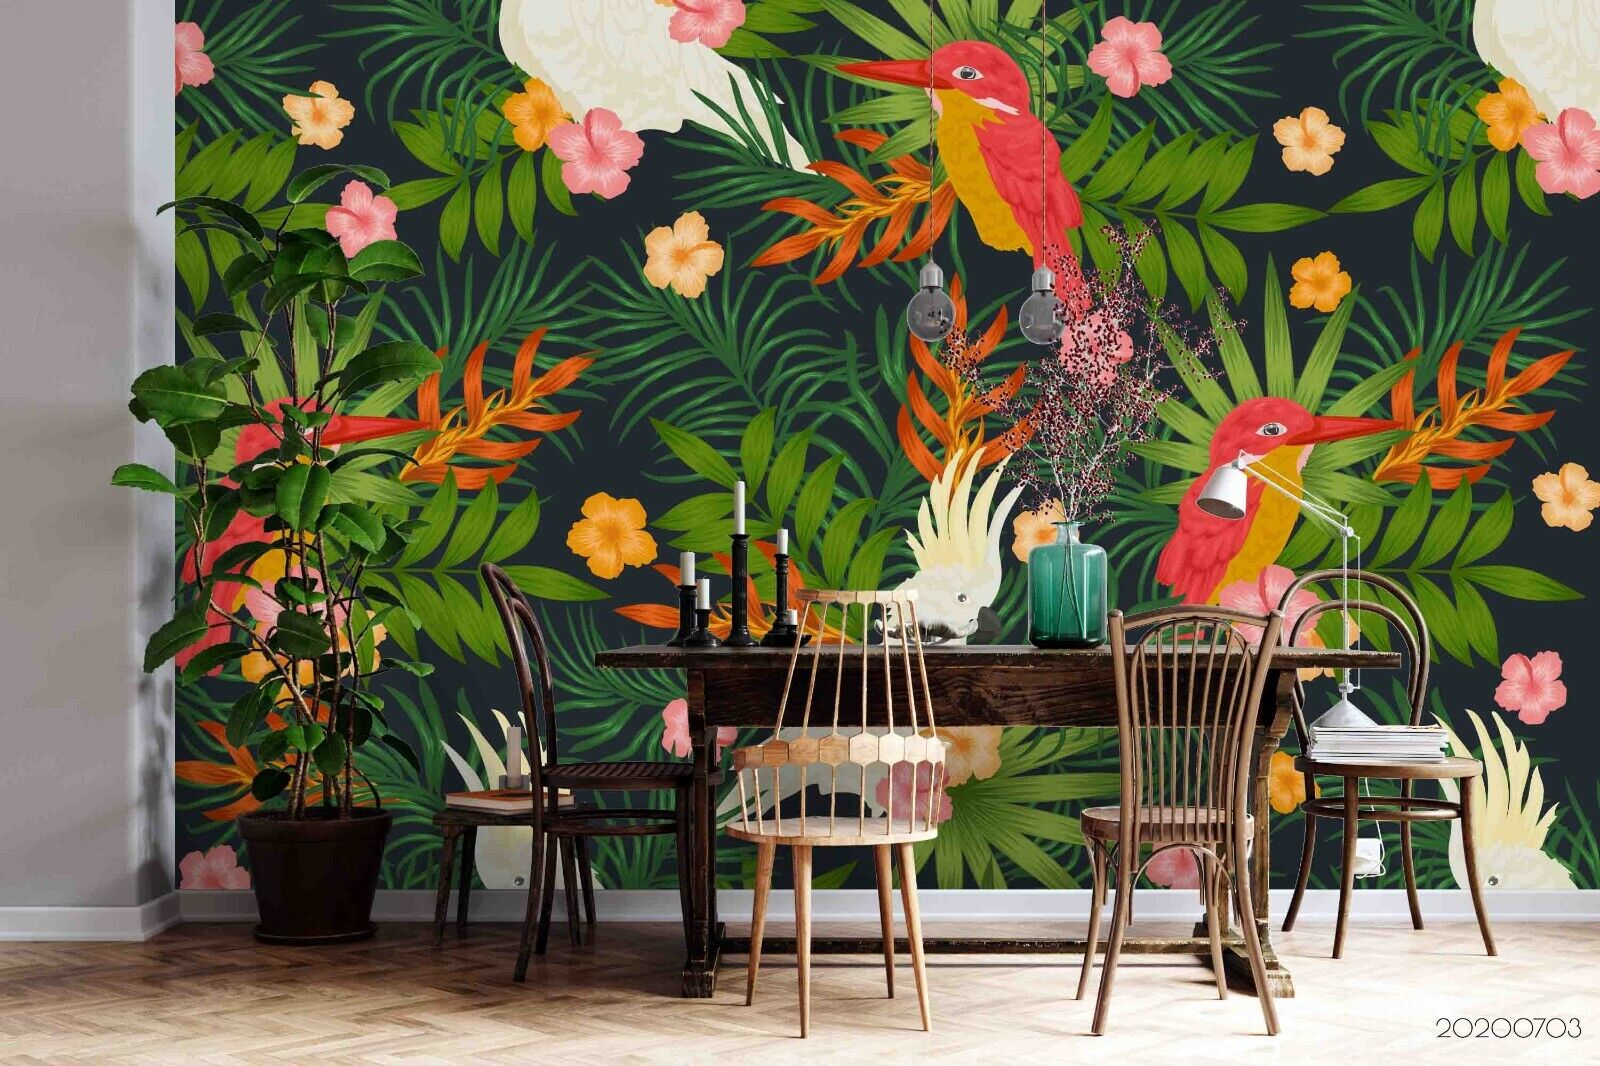 3D Tropical Jungle Bird Wallpaper Wall Murals Removable Wallpaper 461 | eBay